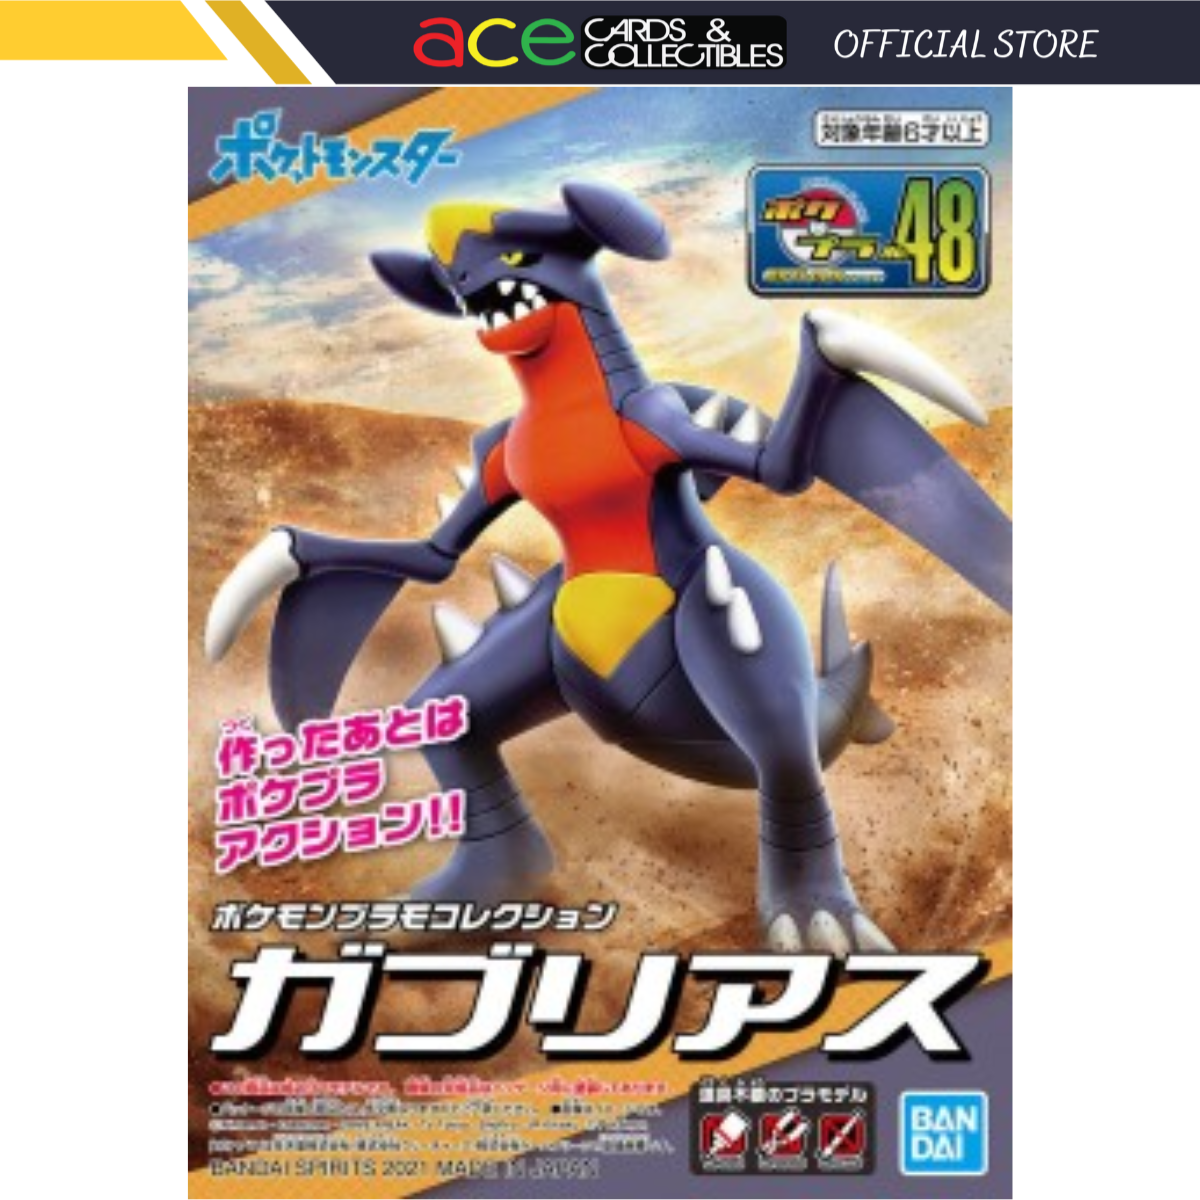 Pokémon Plastic Model Collection No.48 "Garchomp"-Bandai-Ace Cards & Collectibles